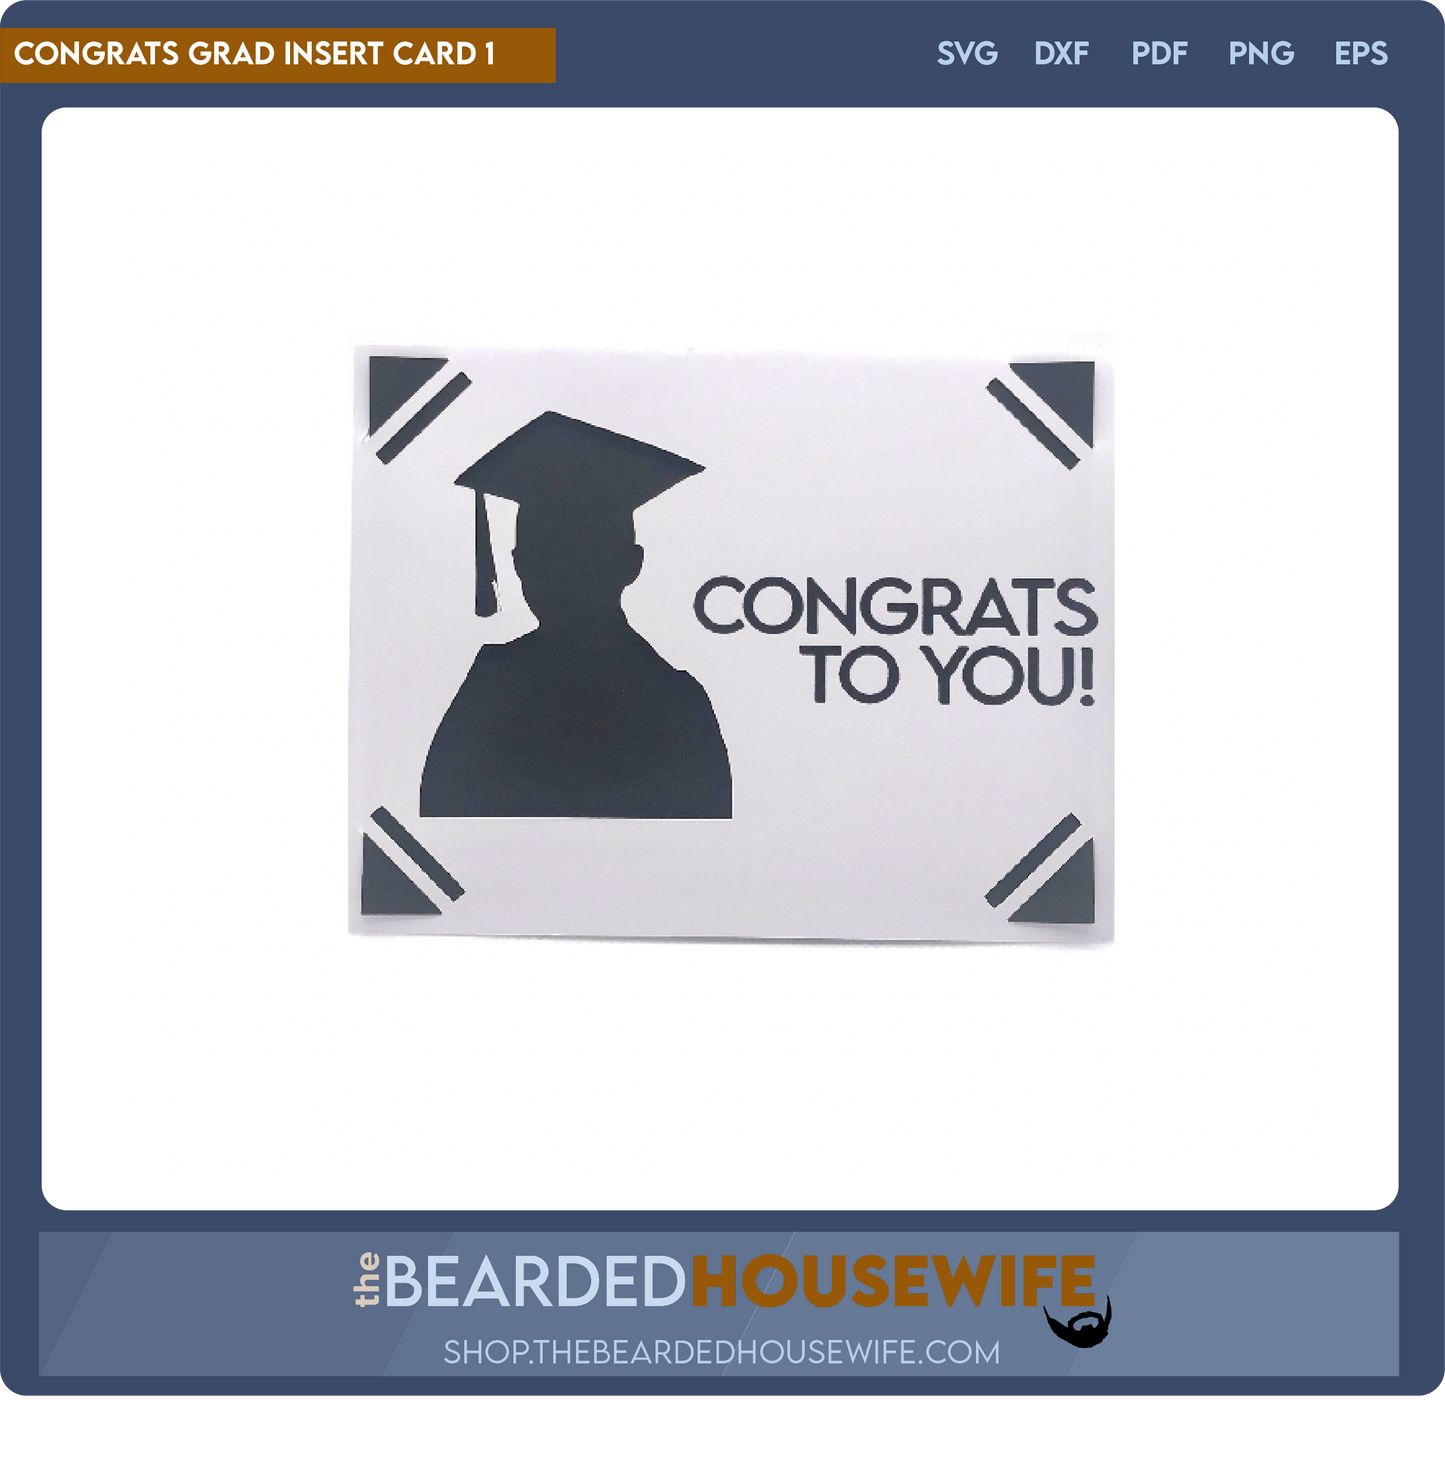 Congrats Grad Insert Card 1